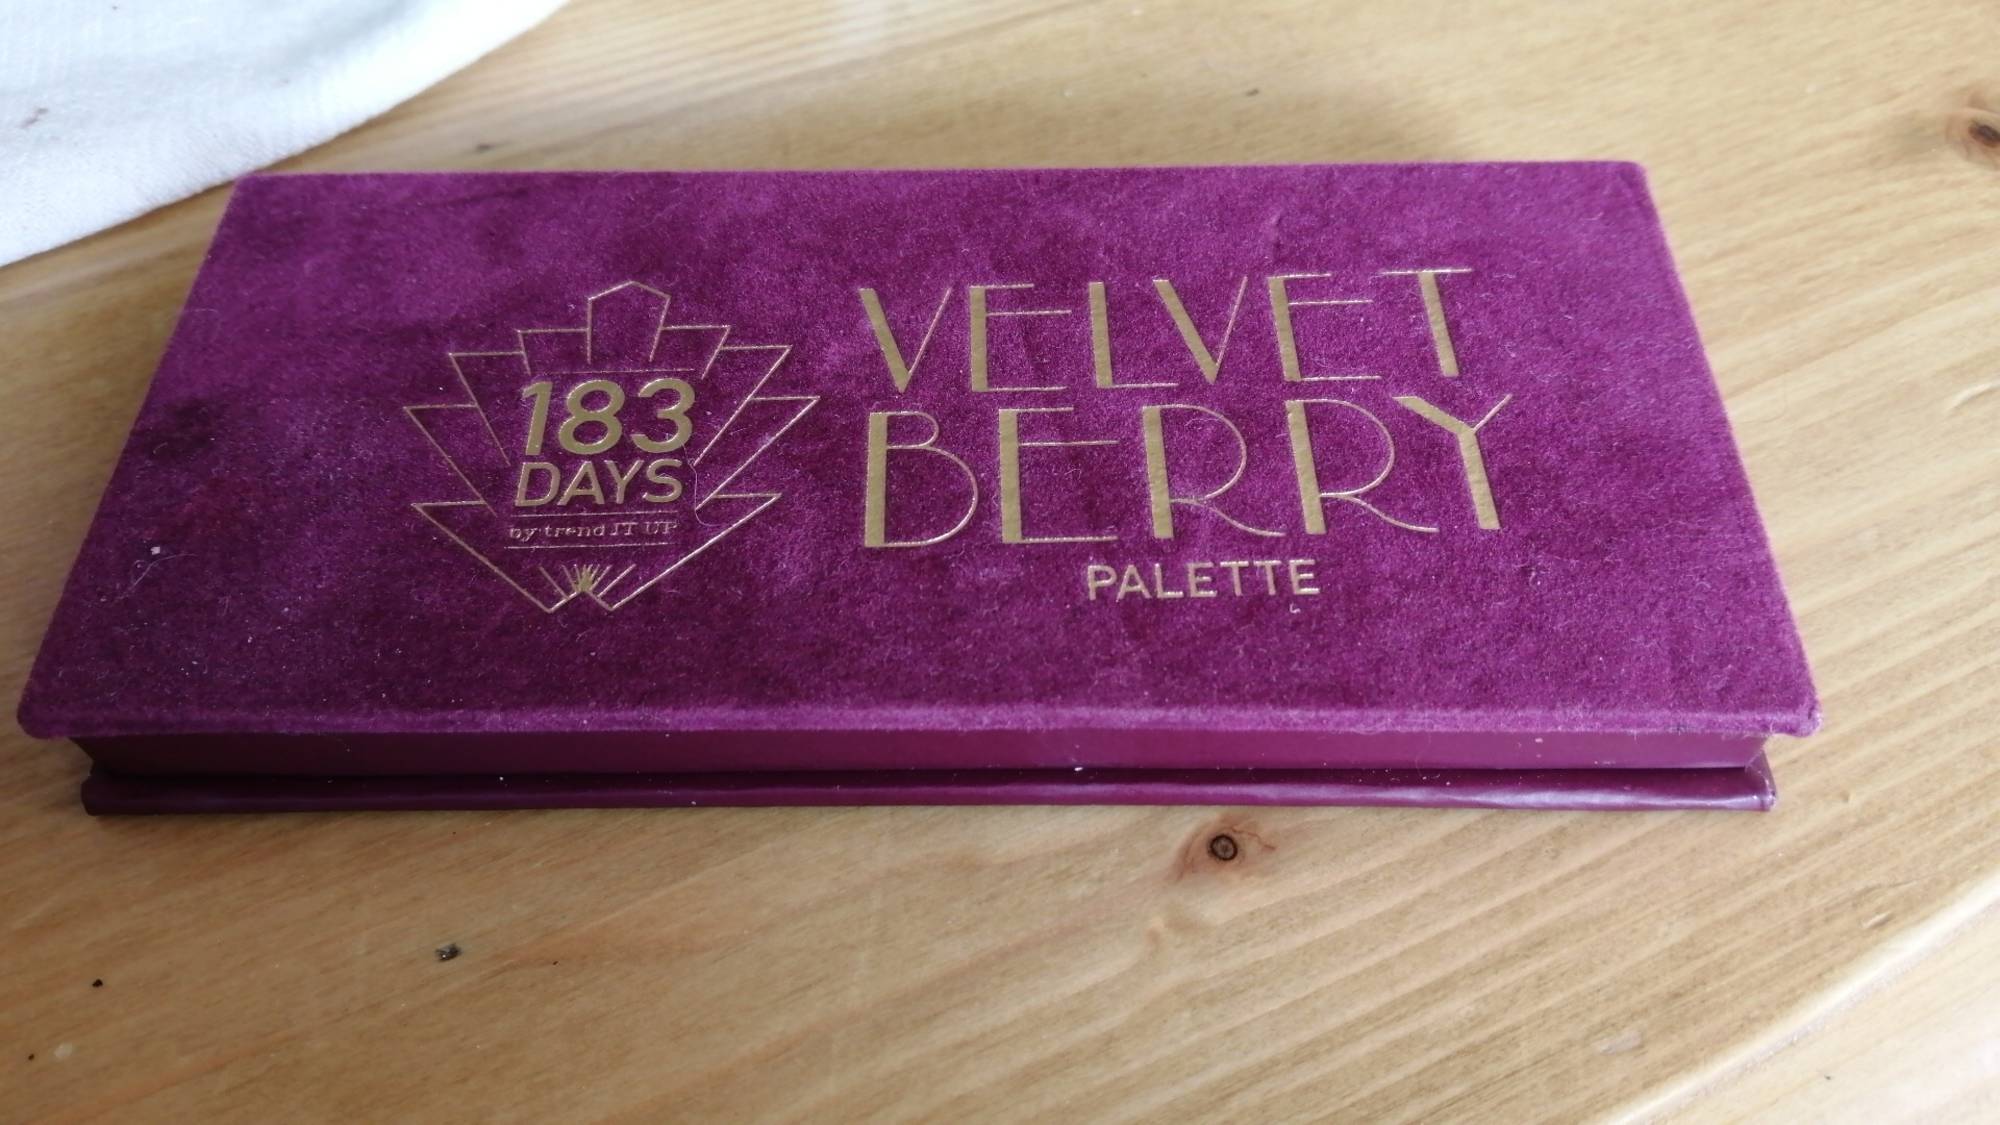 TREND IT UP - 183 Days - Velvet Berry palette